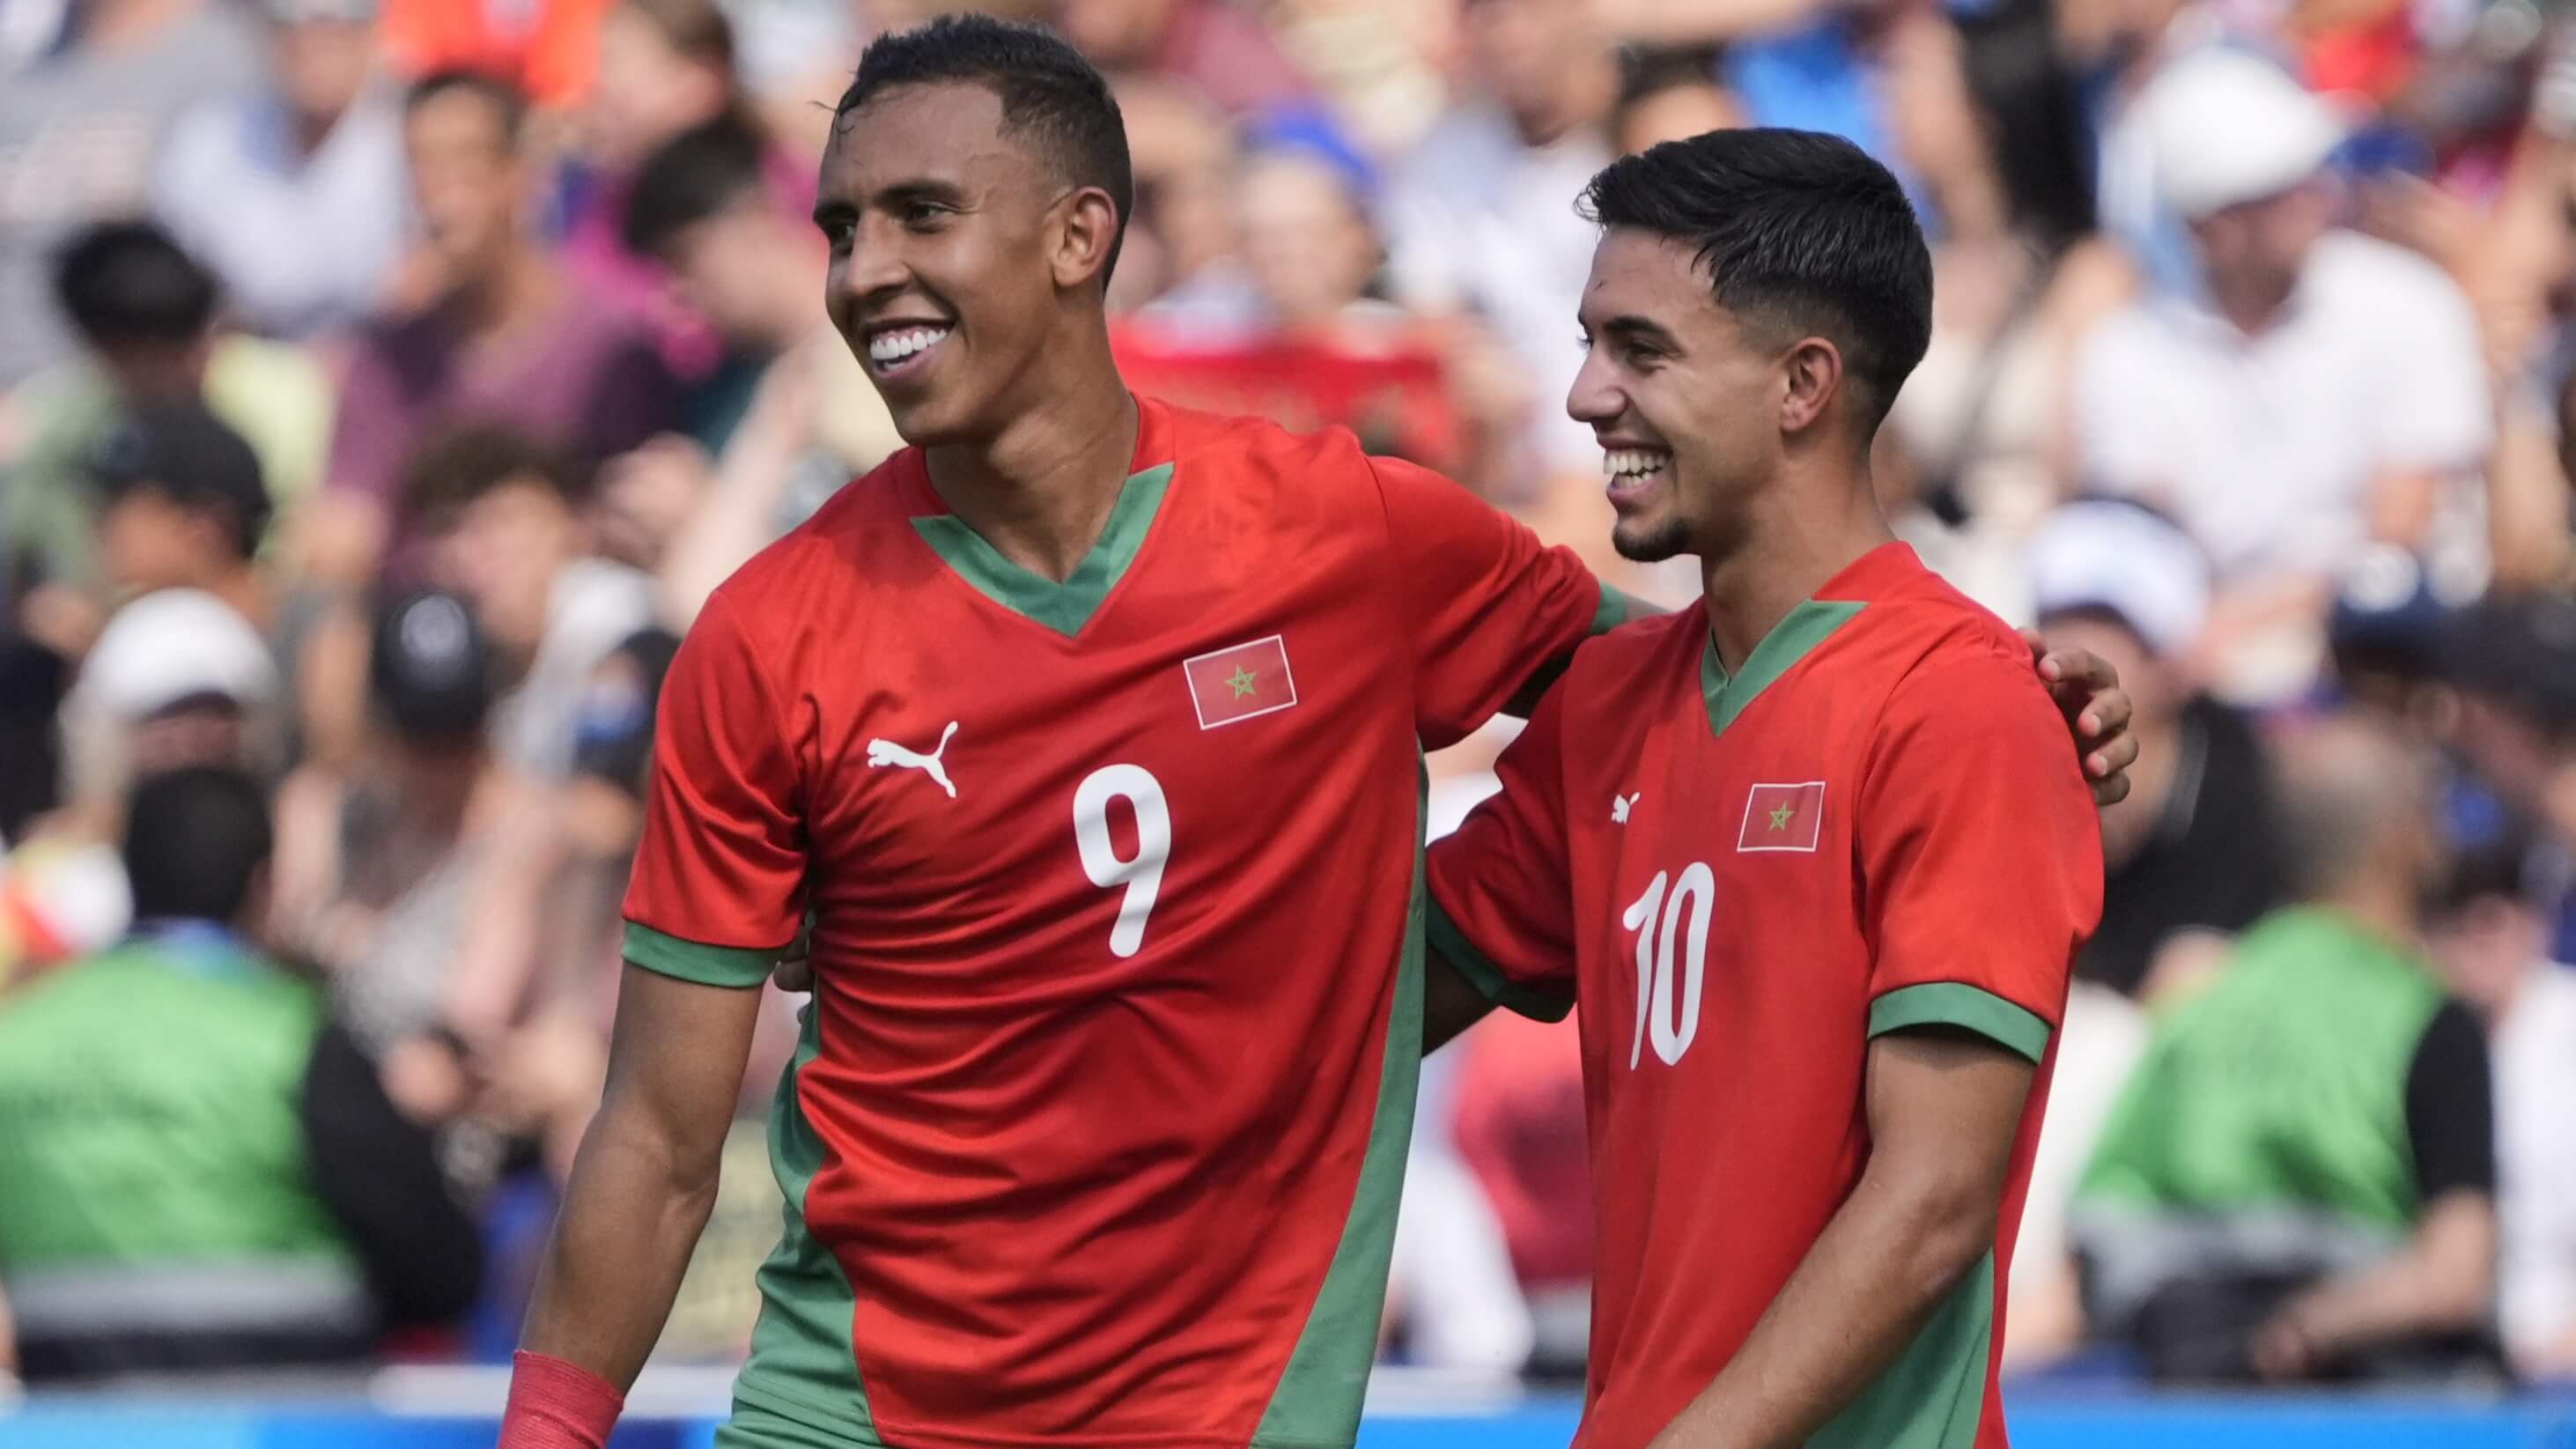 Morocco vs Spain Semifinal Odds, Picks & Predictions: Olympic Men's Soccer 